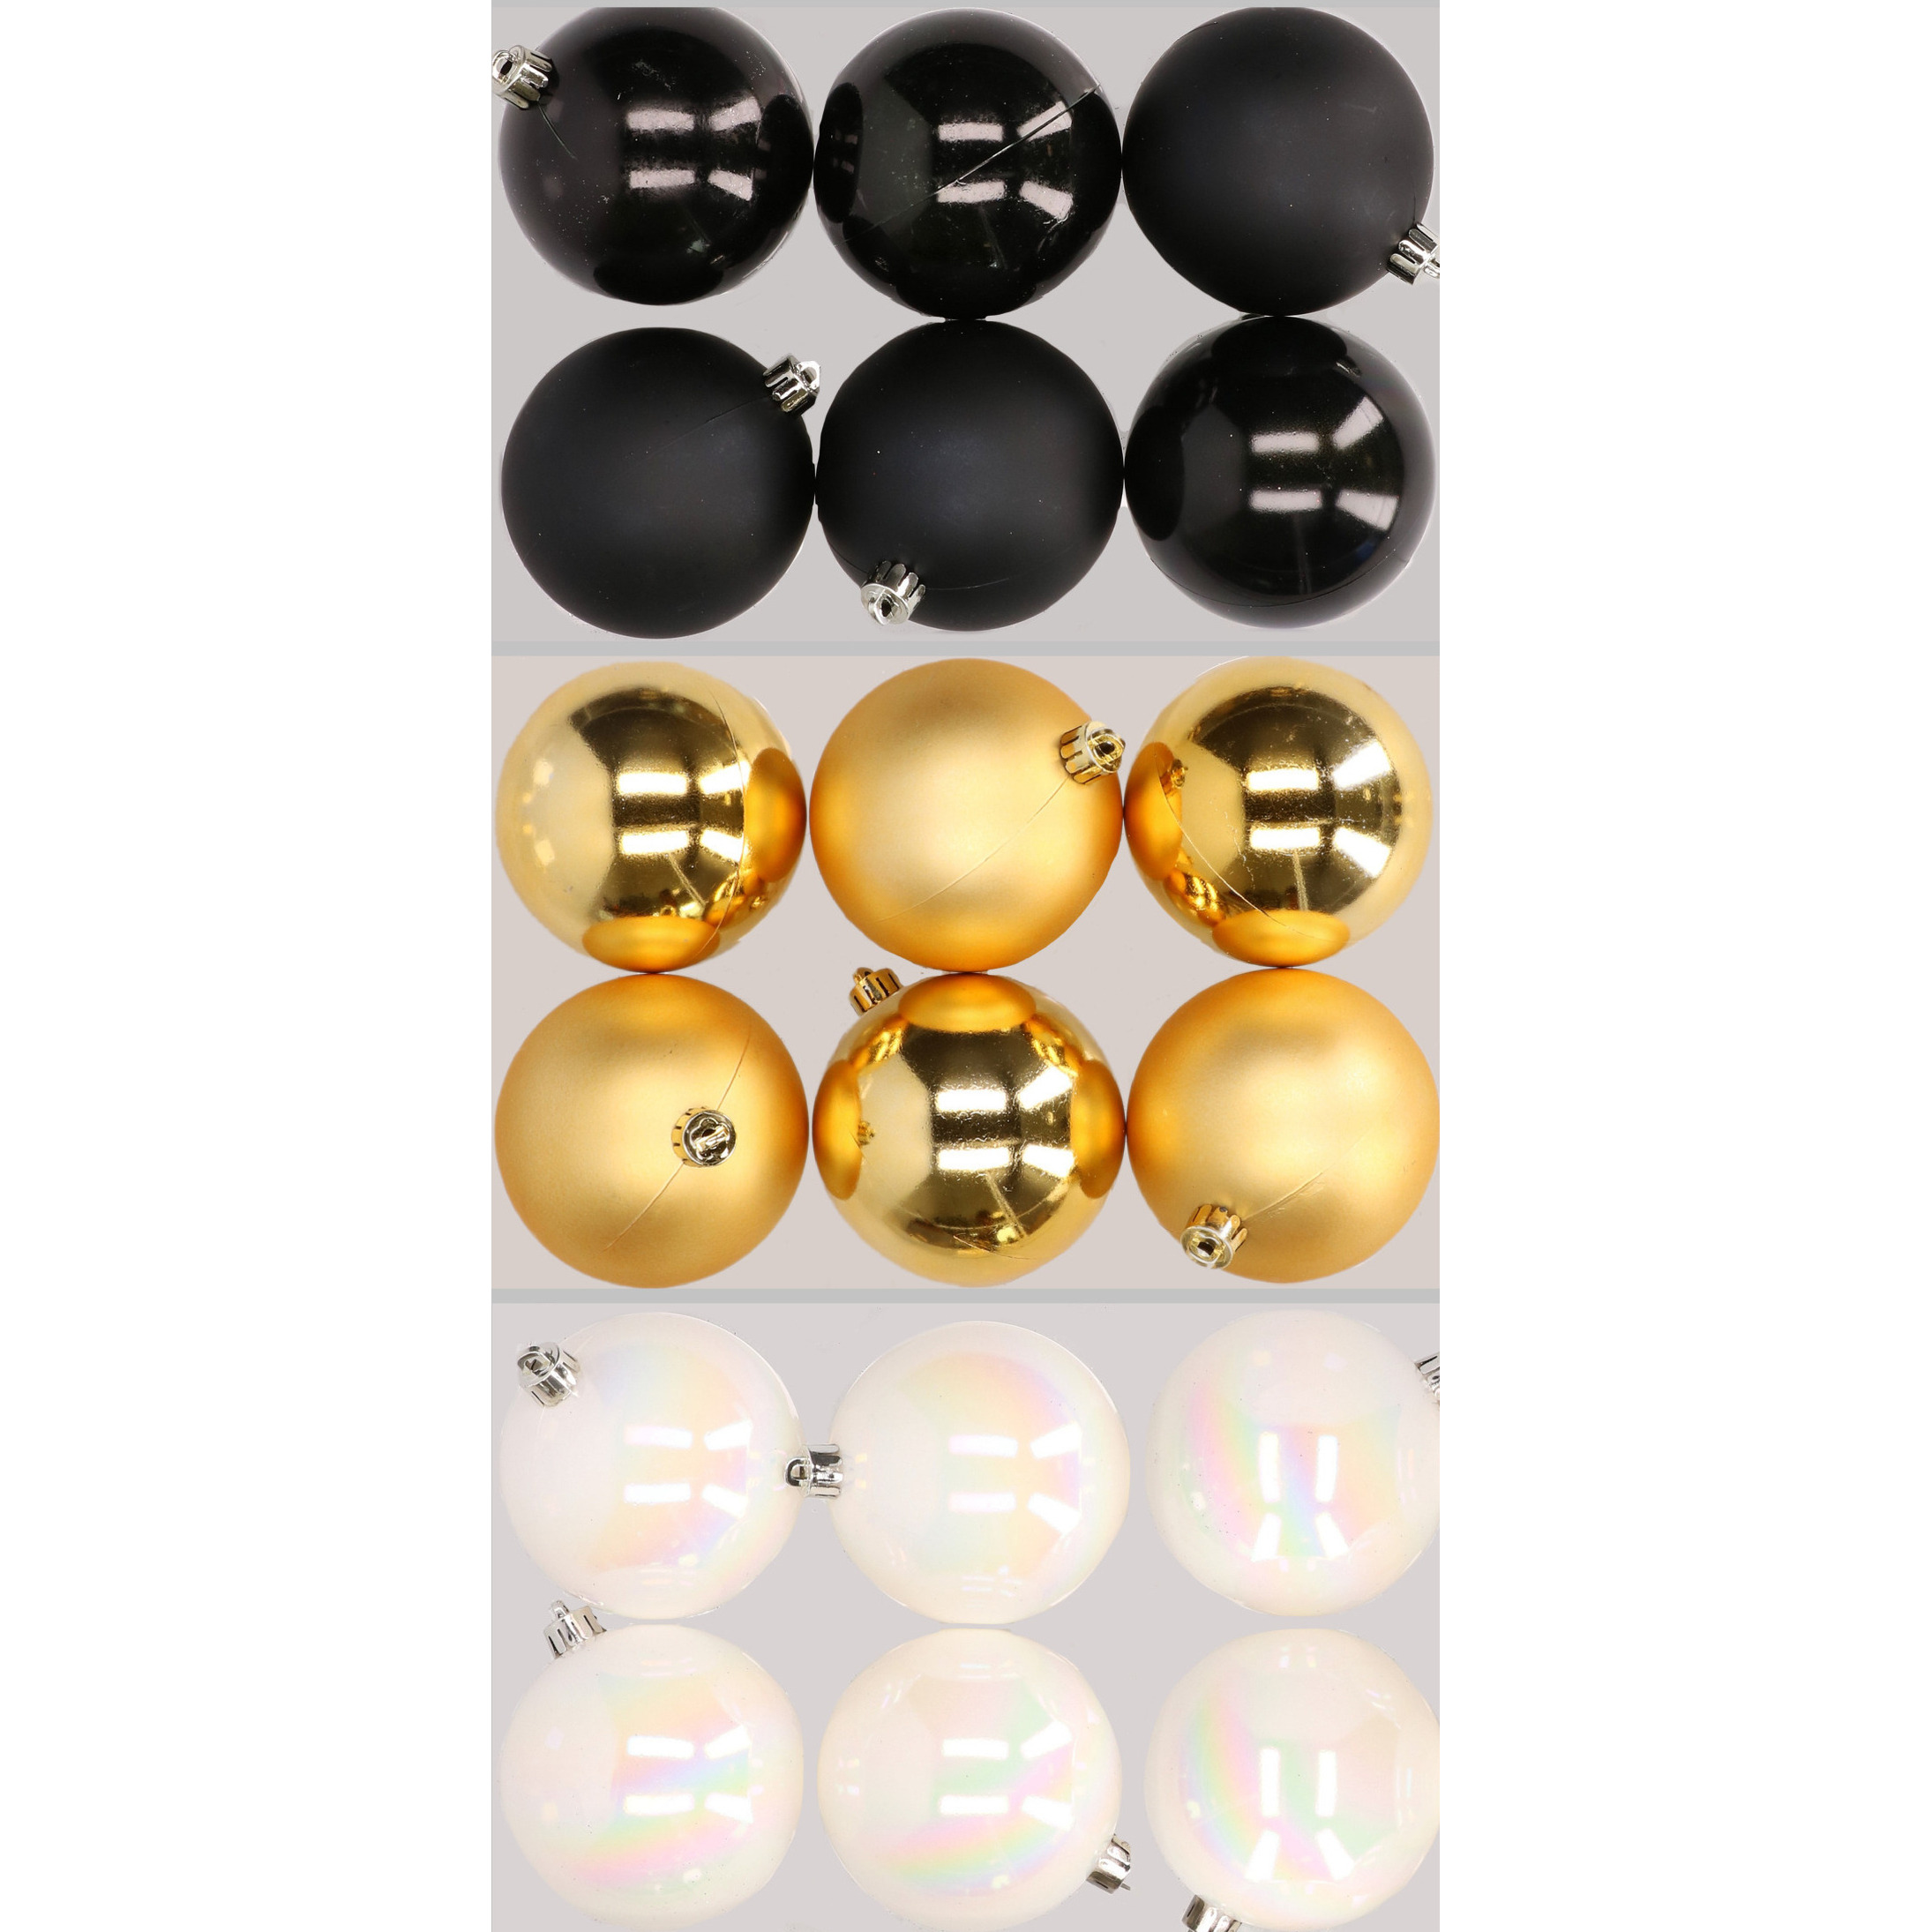 18x stuks kunststof kerstballen mix van zwart, parelmoer wit en goud 8 cm